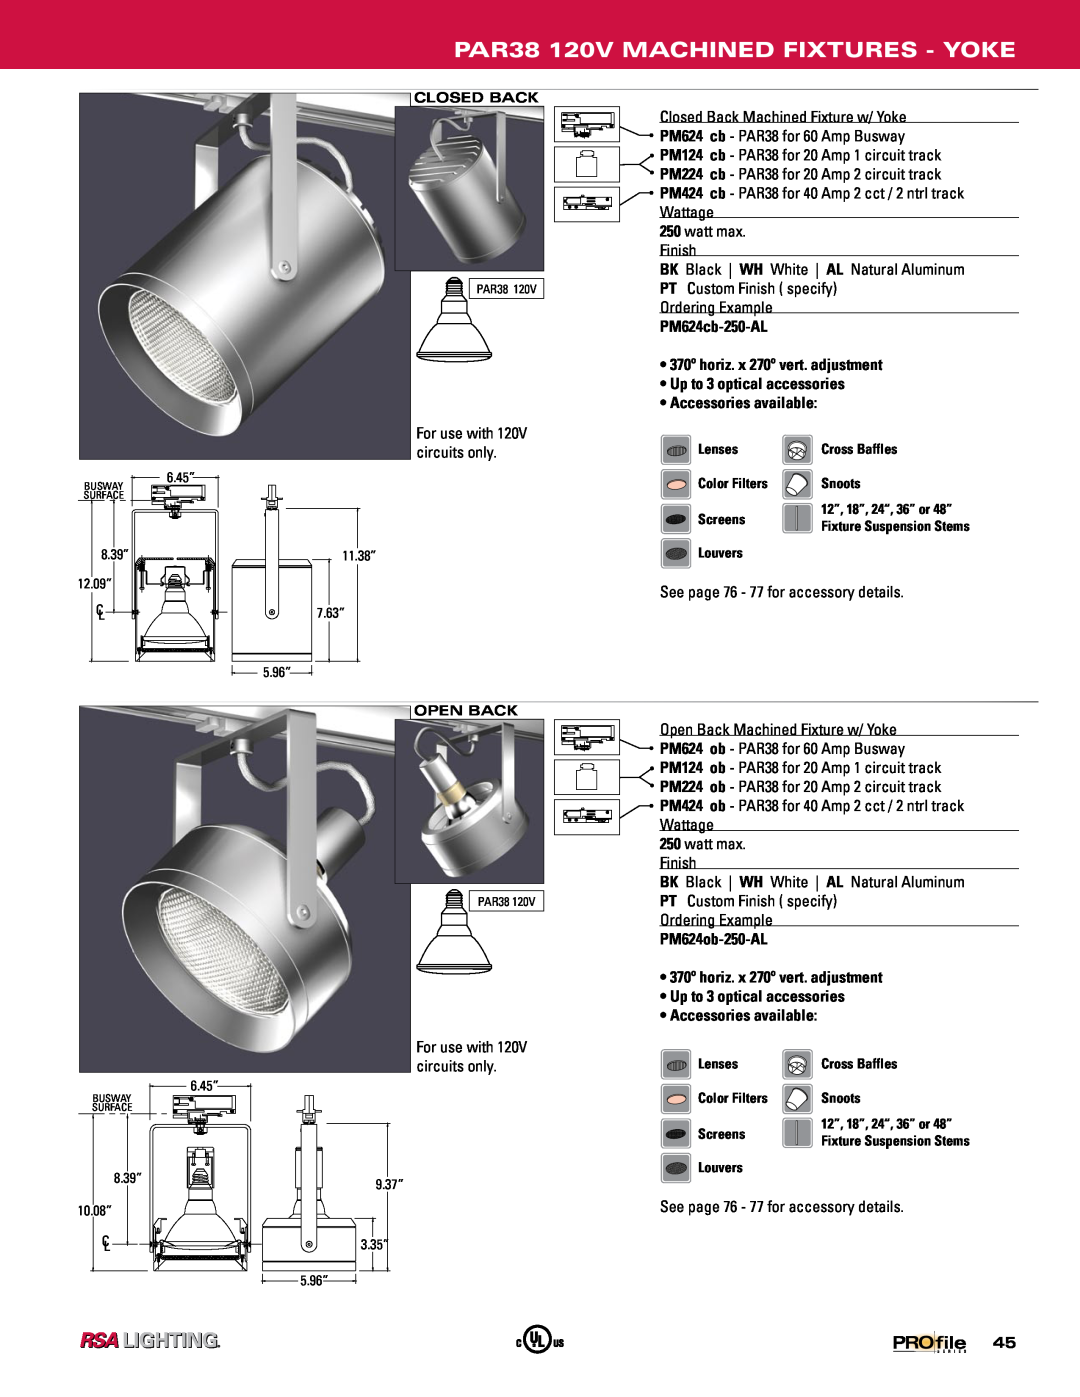 Profile Machined Aluminum Fixtures manual PAR38 120V MACHINED FIXTURES - YOKE, PM624cb-250-AL, PM624ob-250-AL 